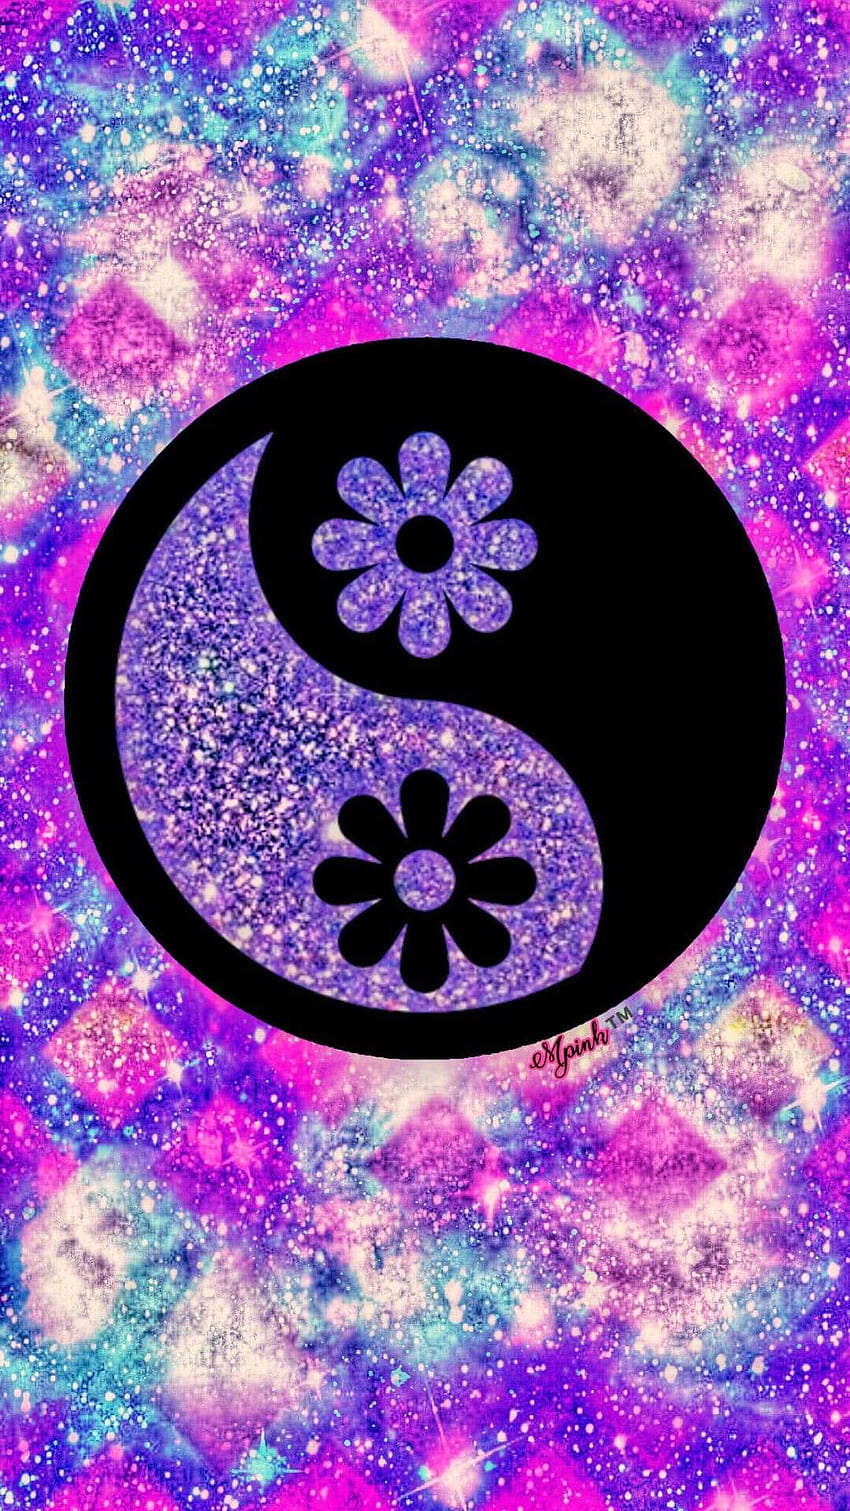 Yin yang: Trái Đất chúng ta luôn có hai mặt đối lập nhau như yin-yang, sự cân bằng là điều cần thiết để đạt được hạnh phúc. Hãy xem hình ảnh liên quan đến yin-yang để tìm hiểu thêm về sự thăng hoa của sự cân bằng.